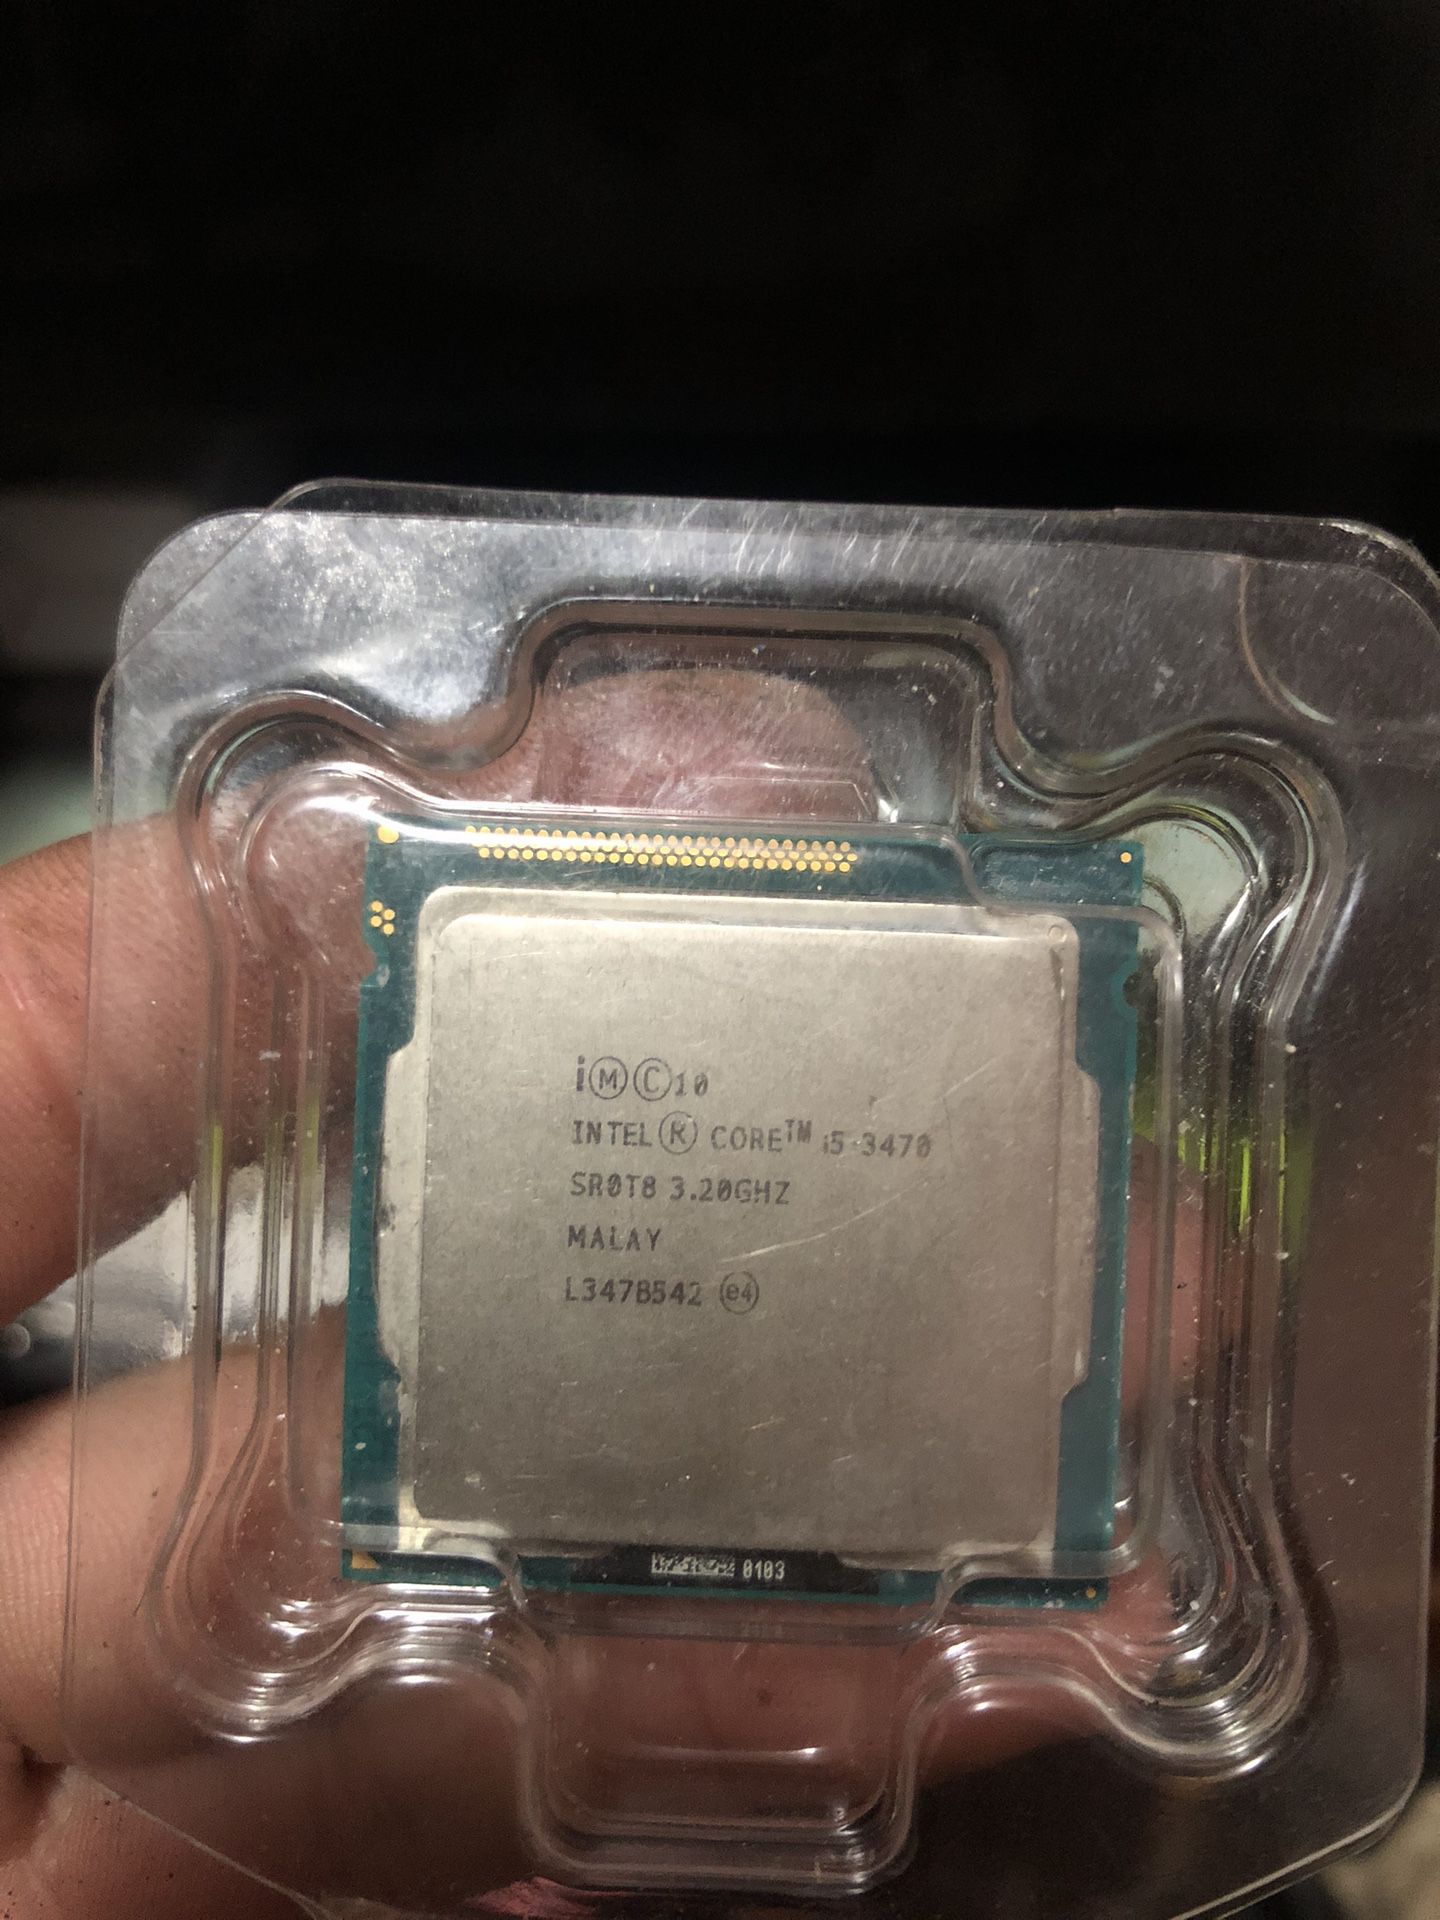 Intel i5 3470 CPU